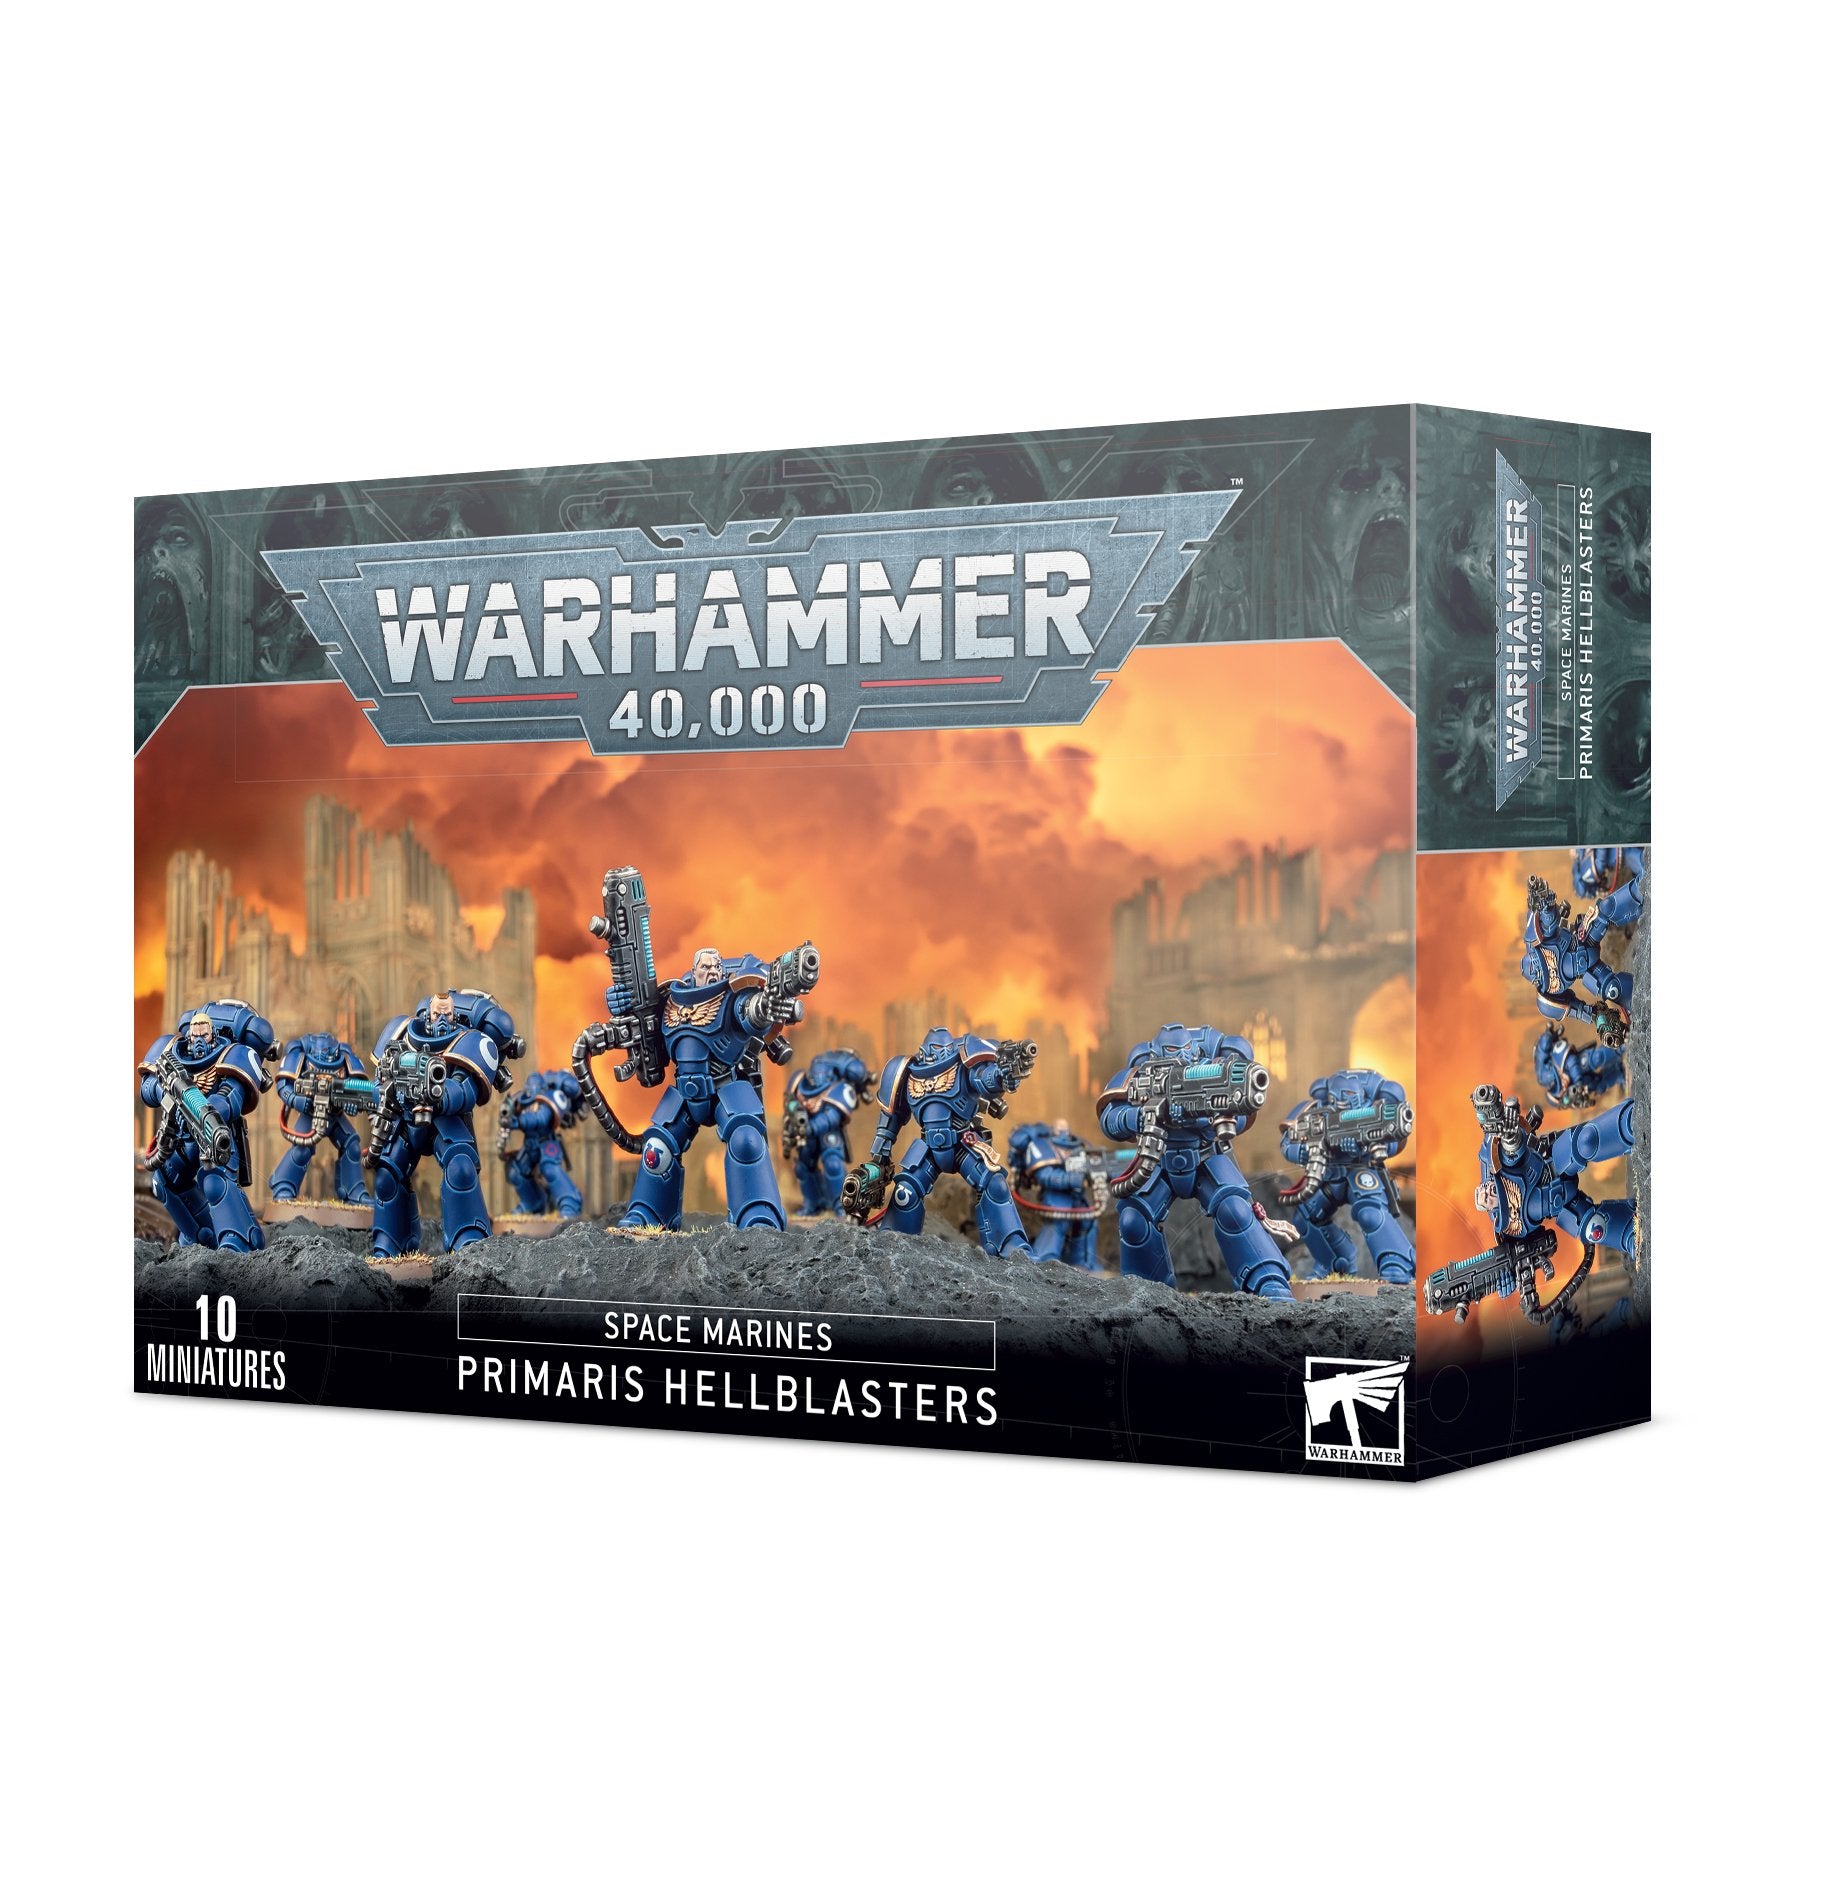 Warhammer 40,000: Space Marine Primaris Hellblasters